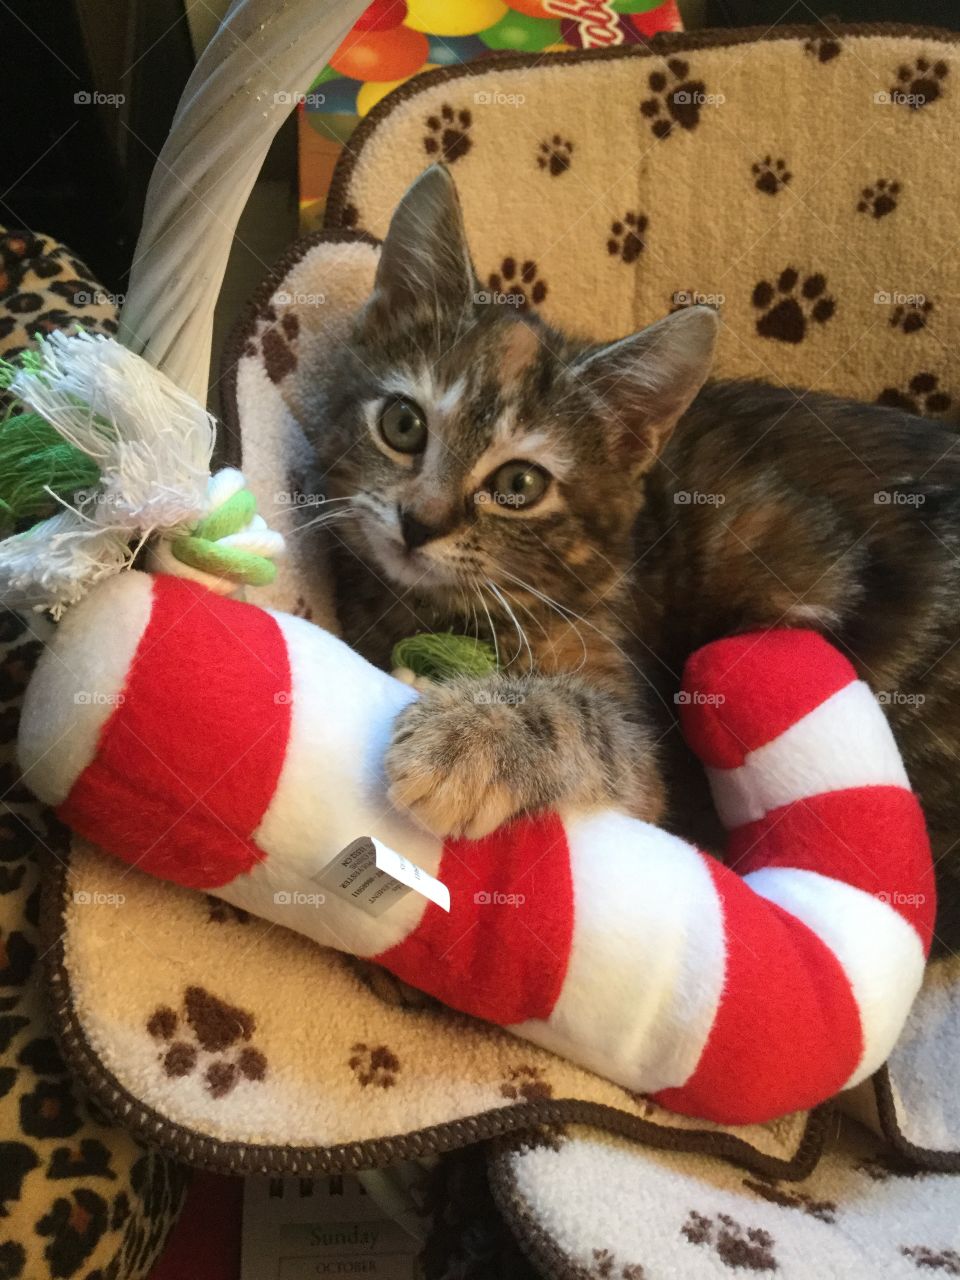 Kitty loves Christmas 